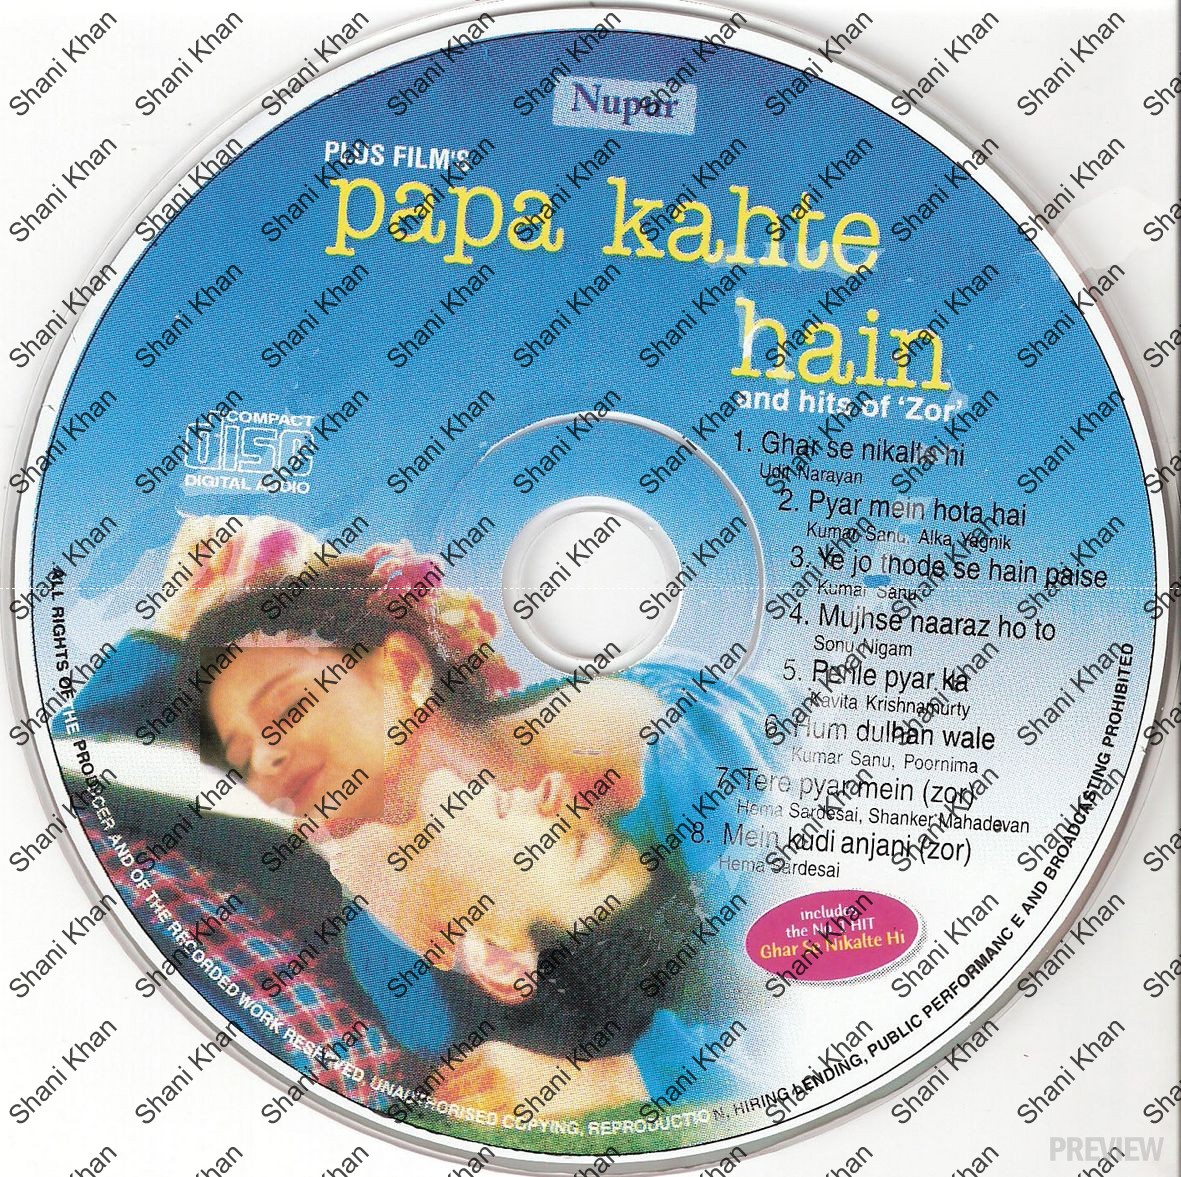 Papa Kahte Hain hindi movie